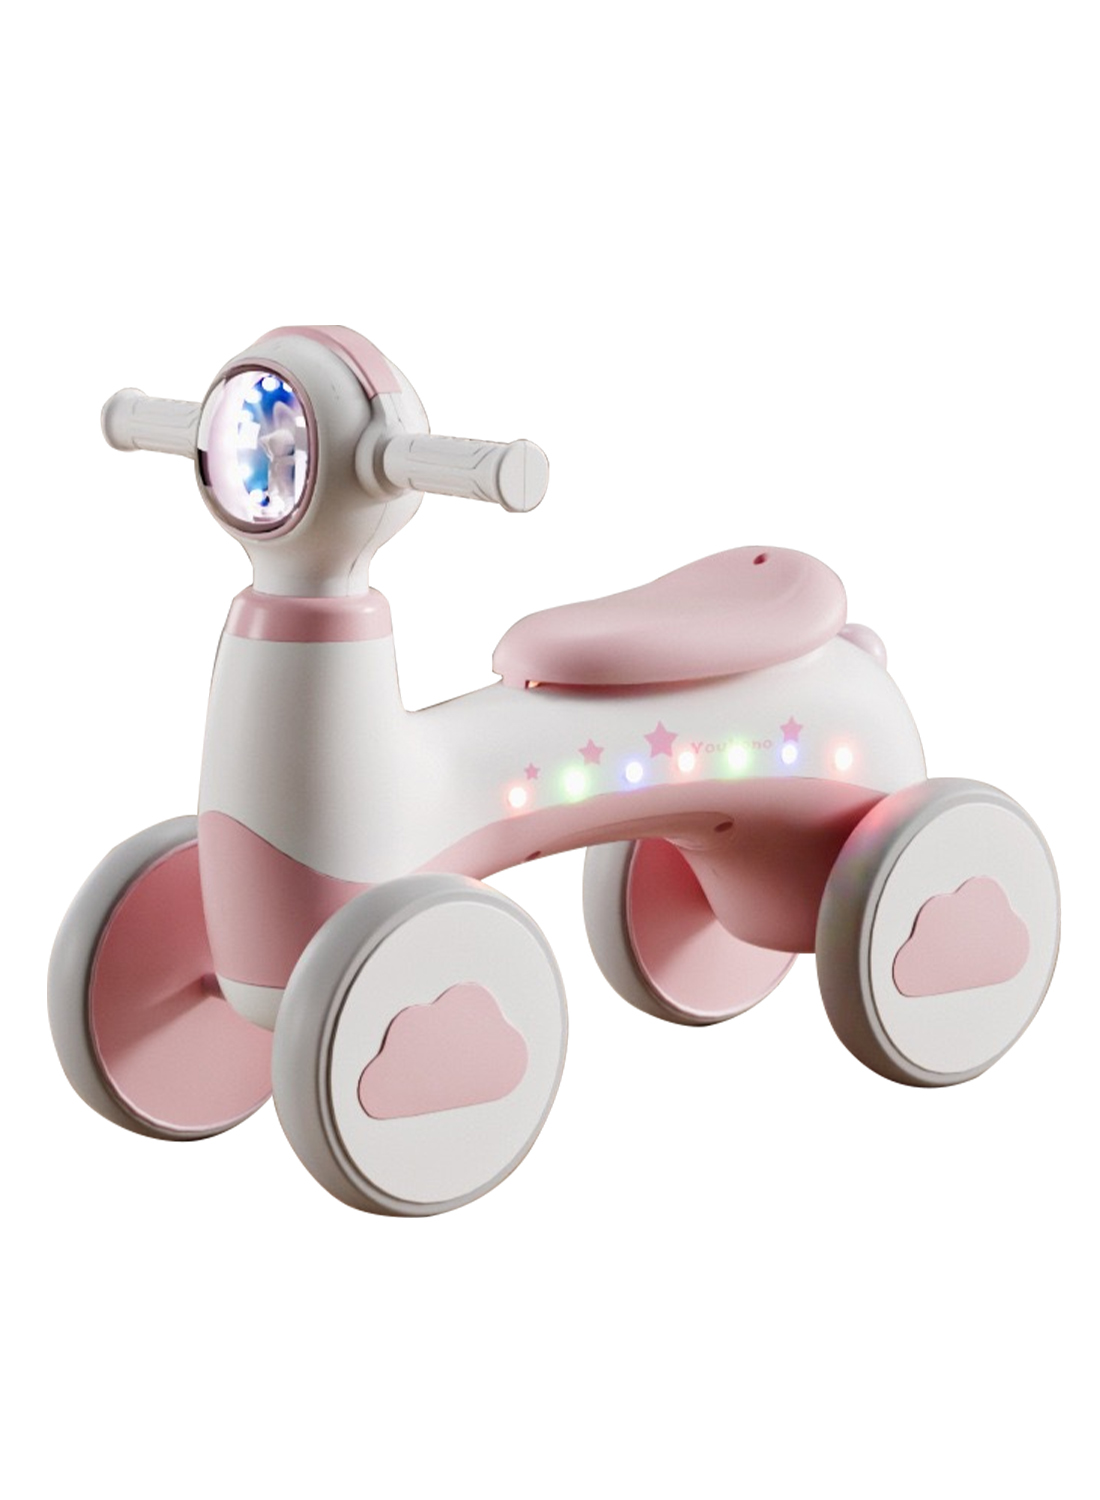 الأطفال سكوتر أربع عجلات دراجة لعبة التوازن 135 درجة مقبض قابل للتدوير ، على نحو سلس إيفا الاطارات ، آمنة ومريحة ركوب